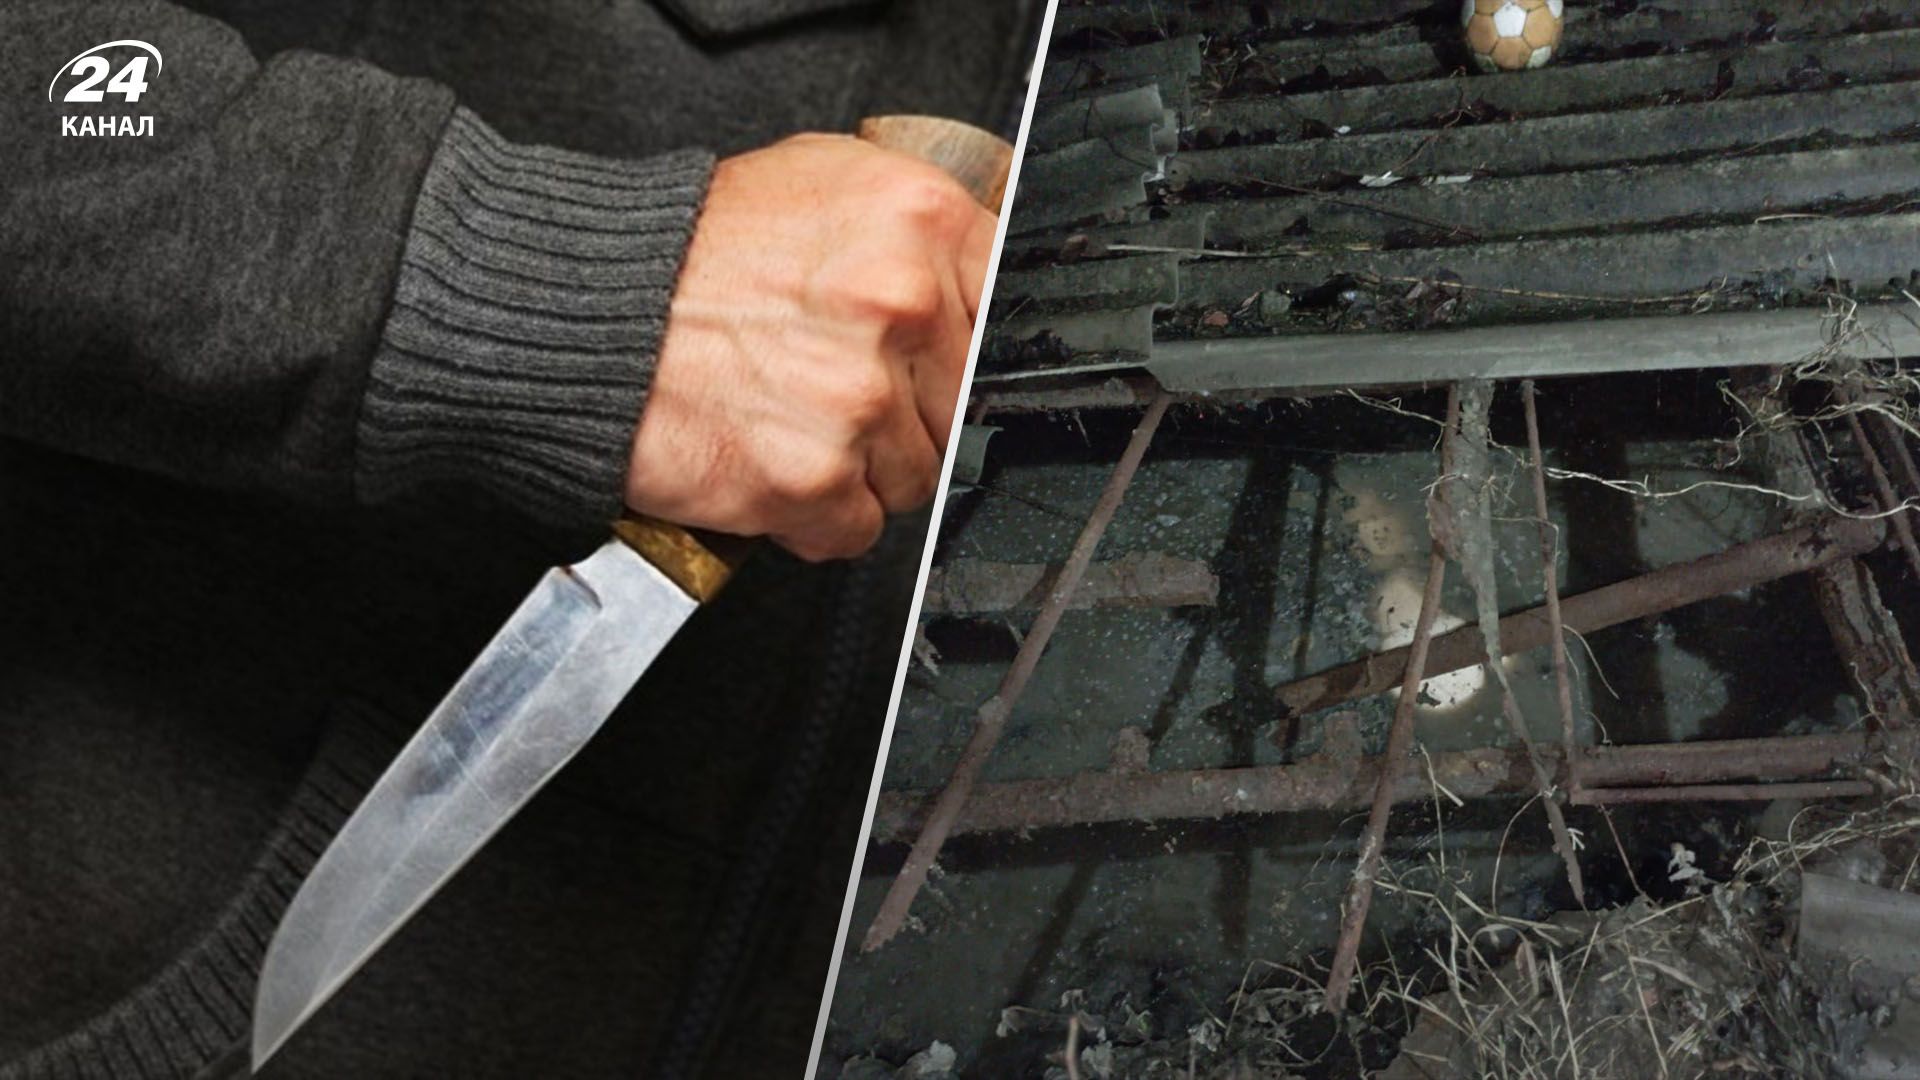 На Харьковщине парень убил отца и выбросил тело в сливную яму: жуткие фото - 24 Канал